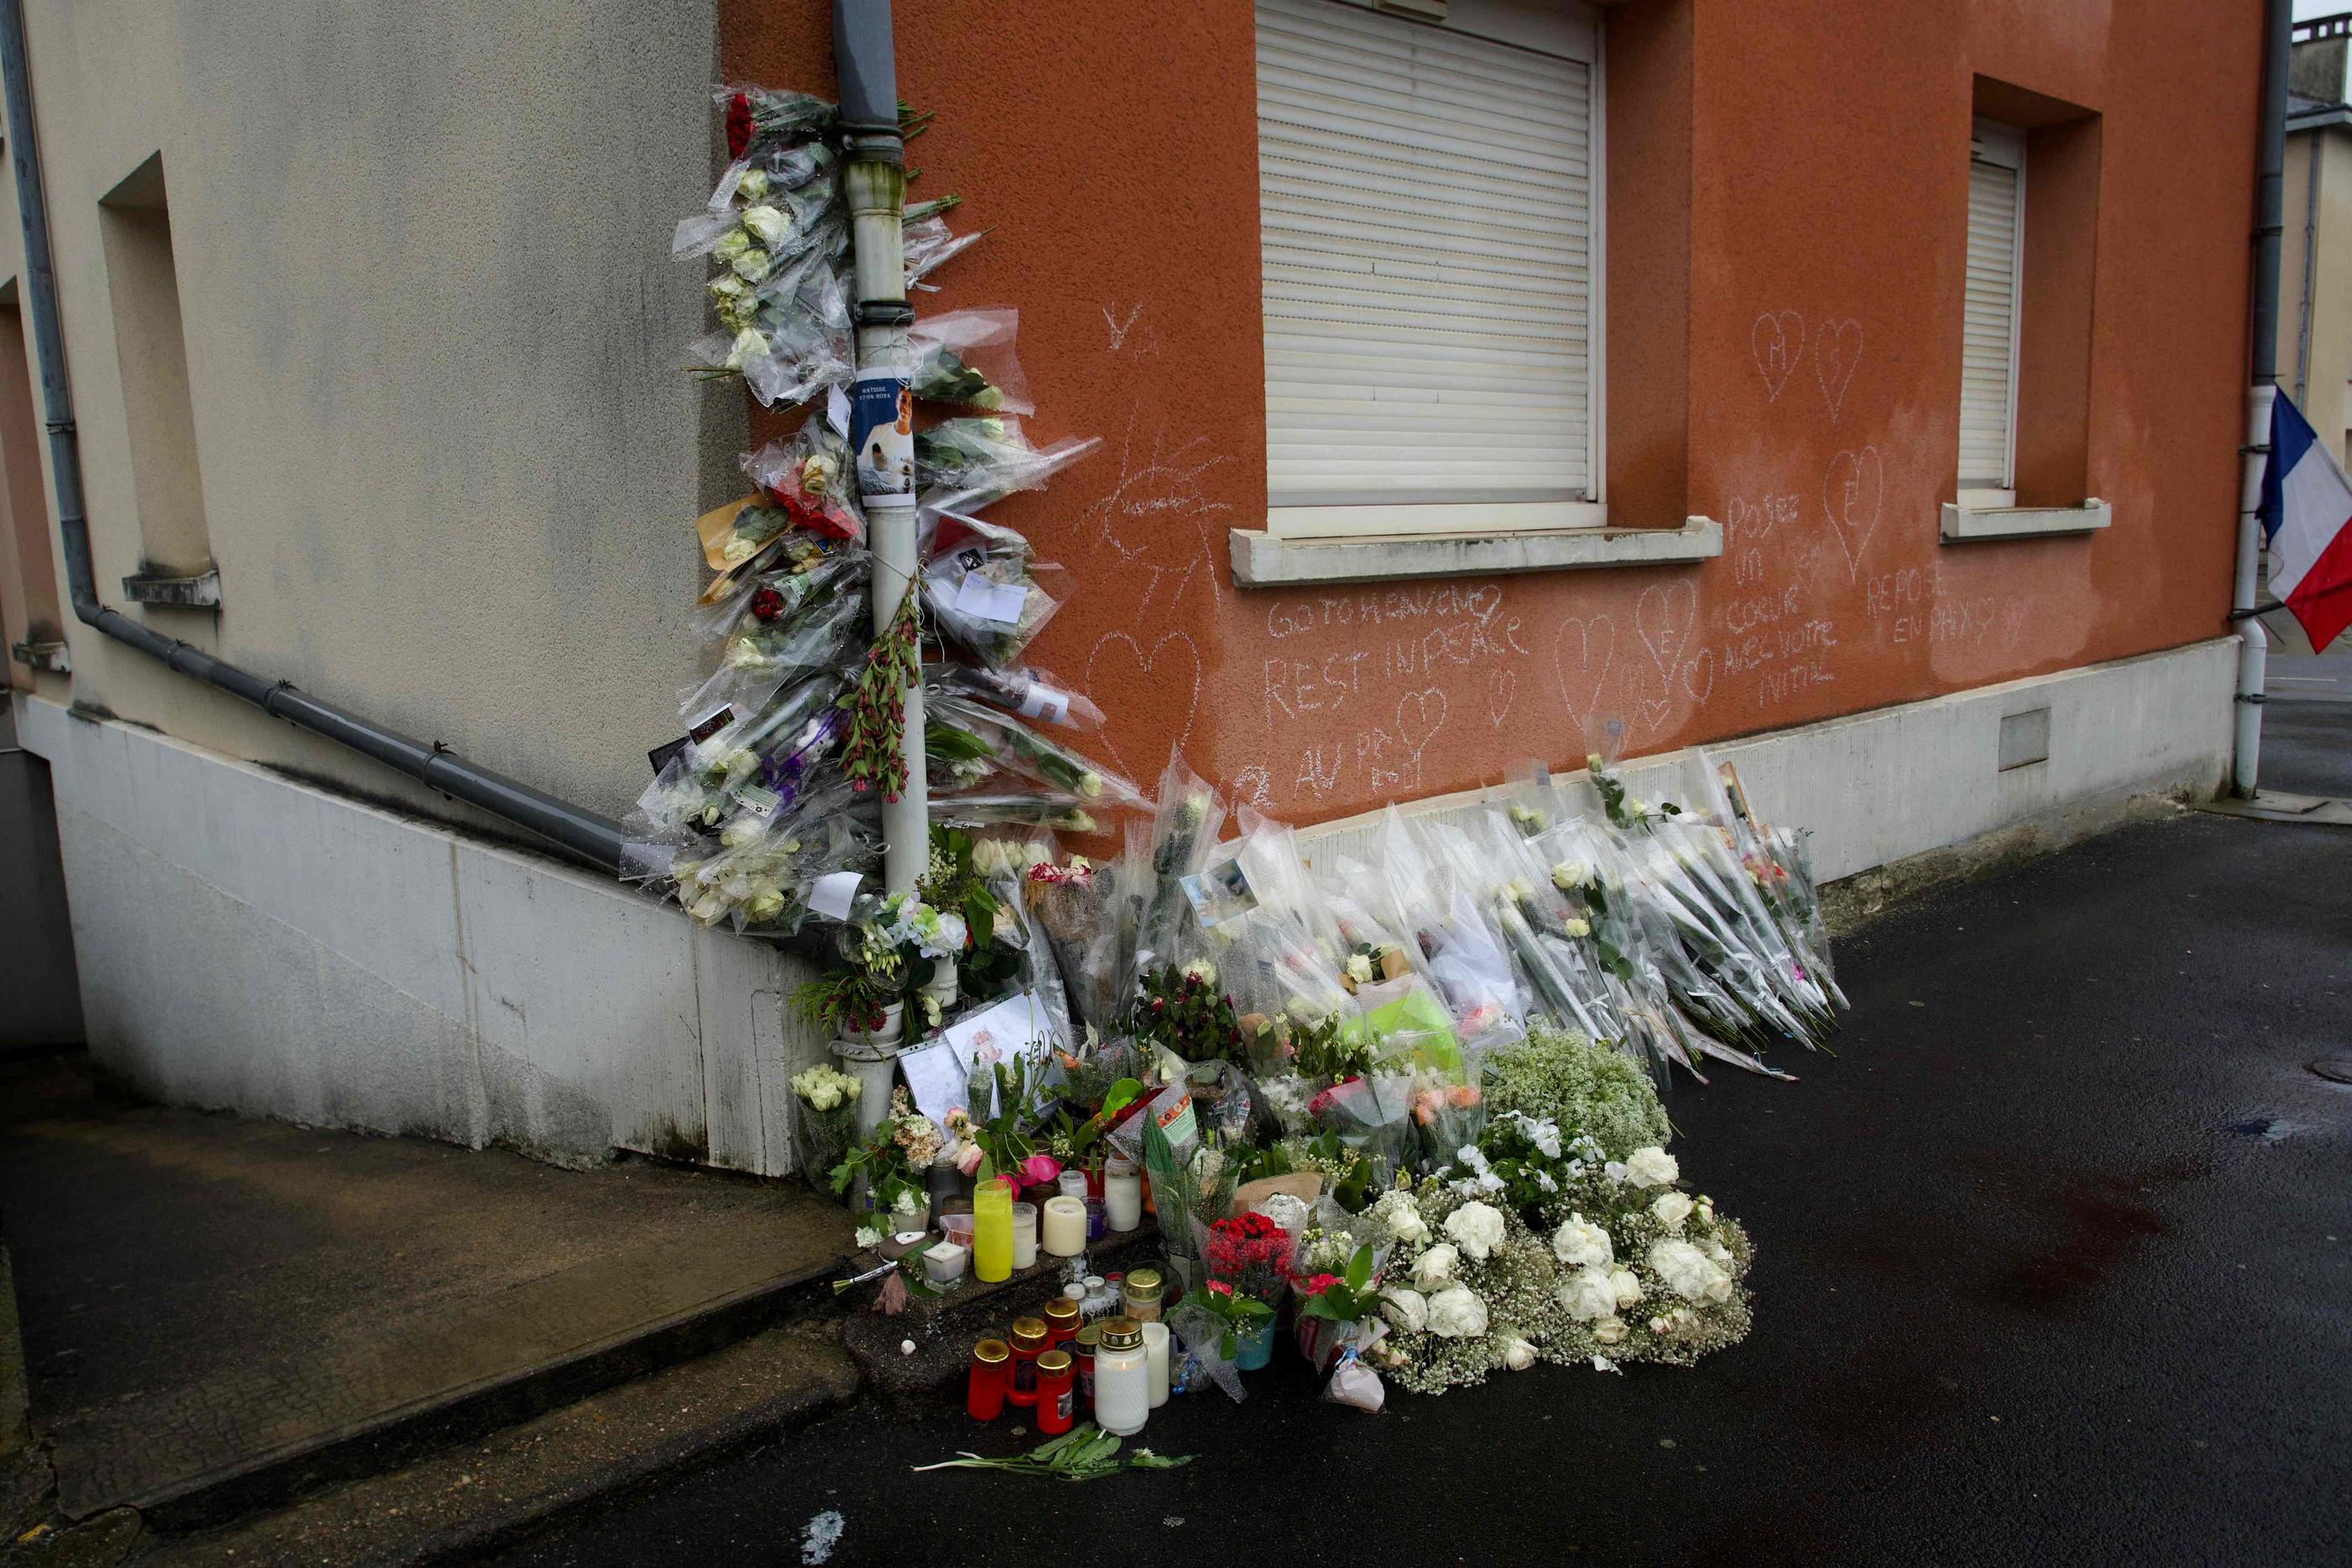 Une marche blanche en hommage au jeune Matisse, 15 ans, tué le 27 avril, a lieu samedi après-midi dans le centre de la ville, à l’appel de la famille qui refuse toute récupération politique. AFP/Guillaume Souvant